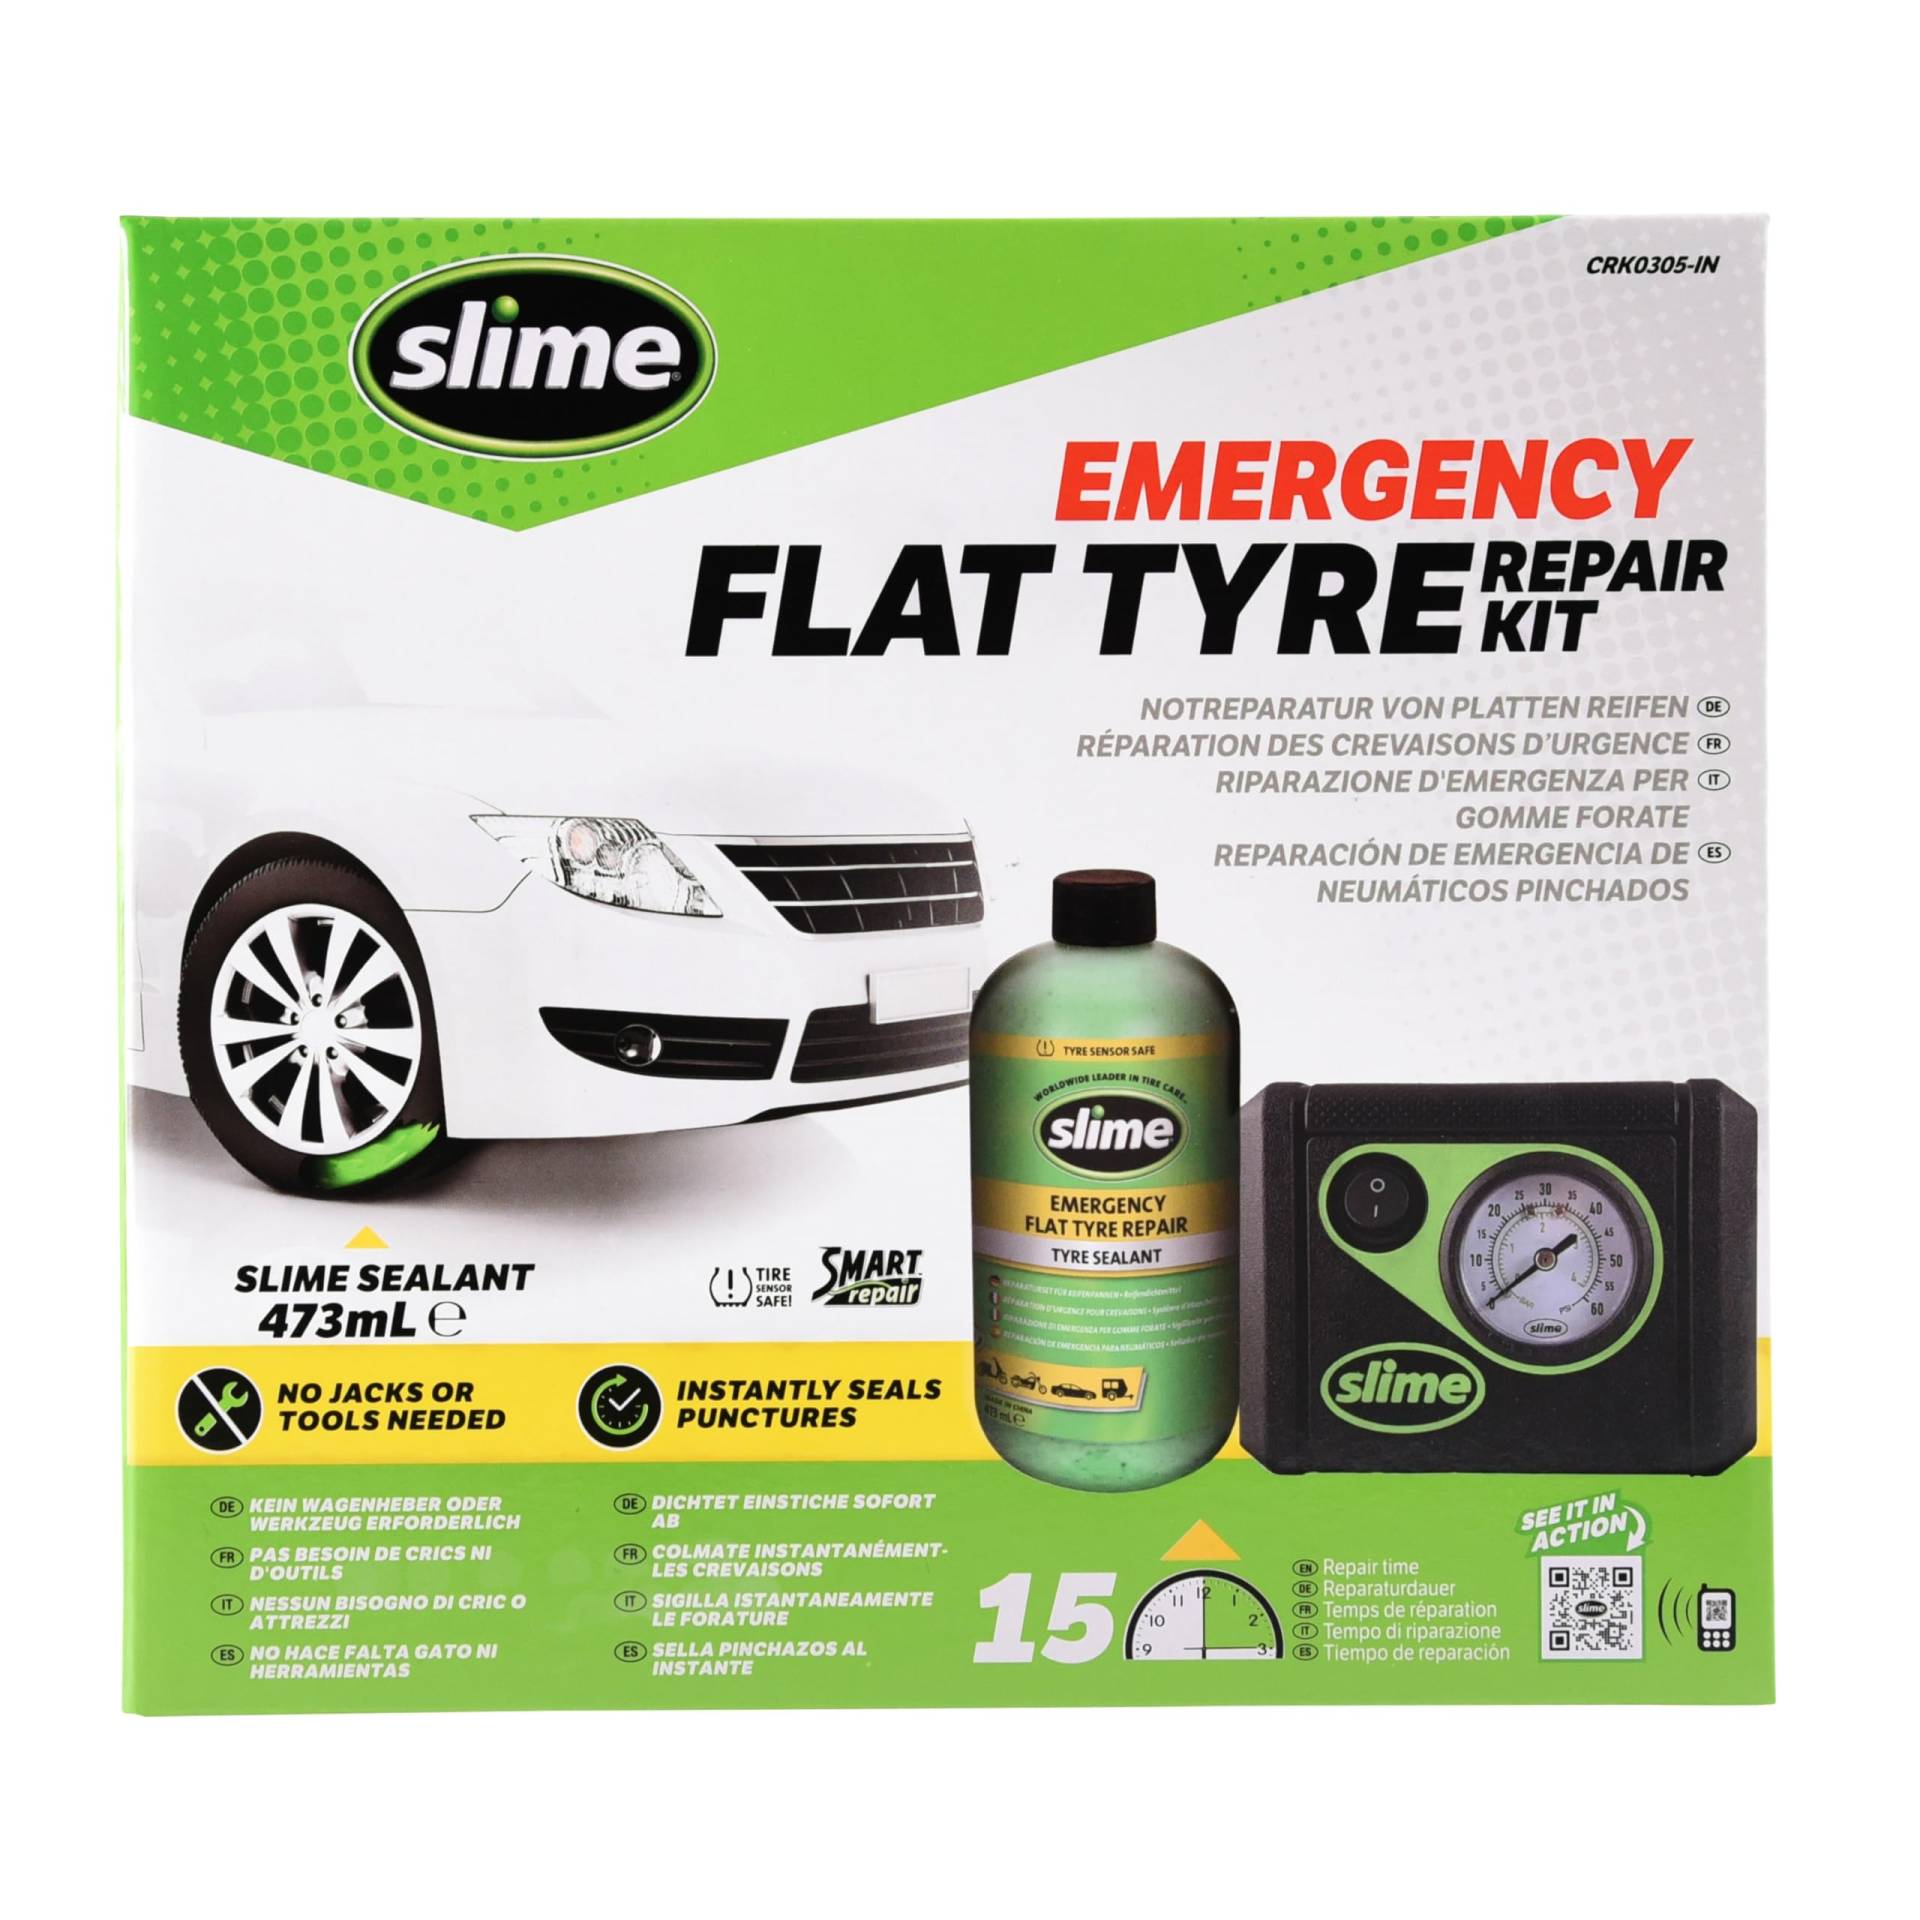 Slime CRK0305-IN Flache Reifenreparatur, Smarte, Autoreifen-Notfallausrüstung, enthält Dichtmittel und Reifenkompressor, Geeignet für Autos und andere Autobahn-Fahrzeuge, 15 Min Reparatur von Slime